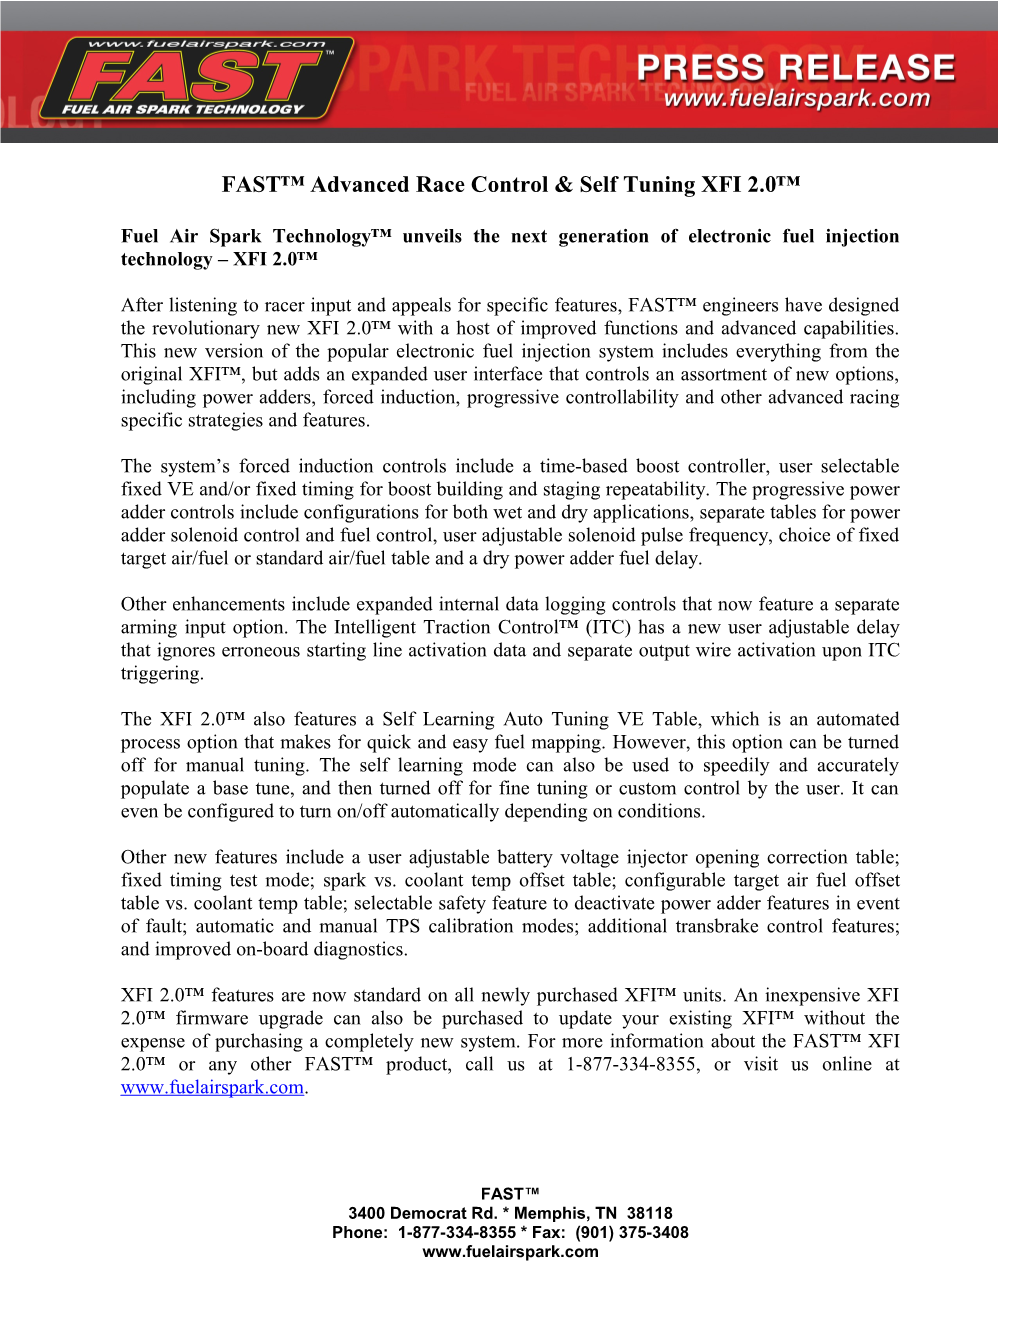 FAST Advanced Race Control & Self Tuning XFI 2.0